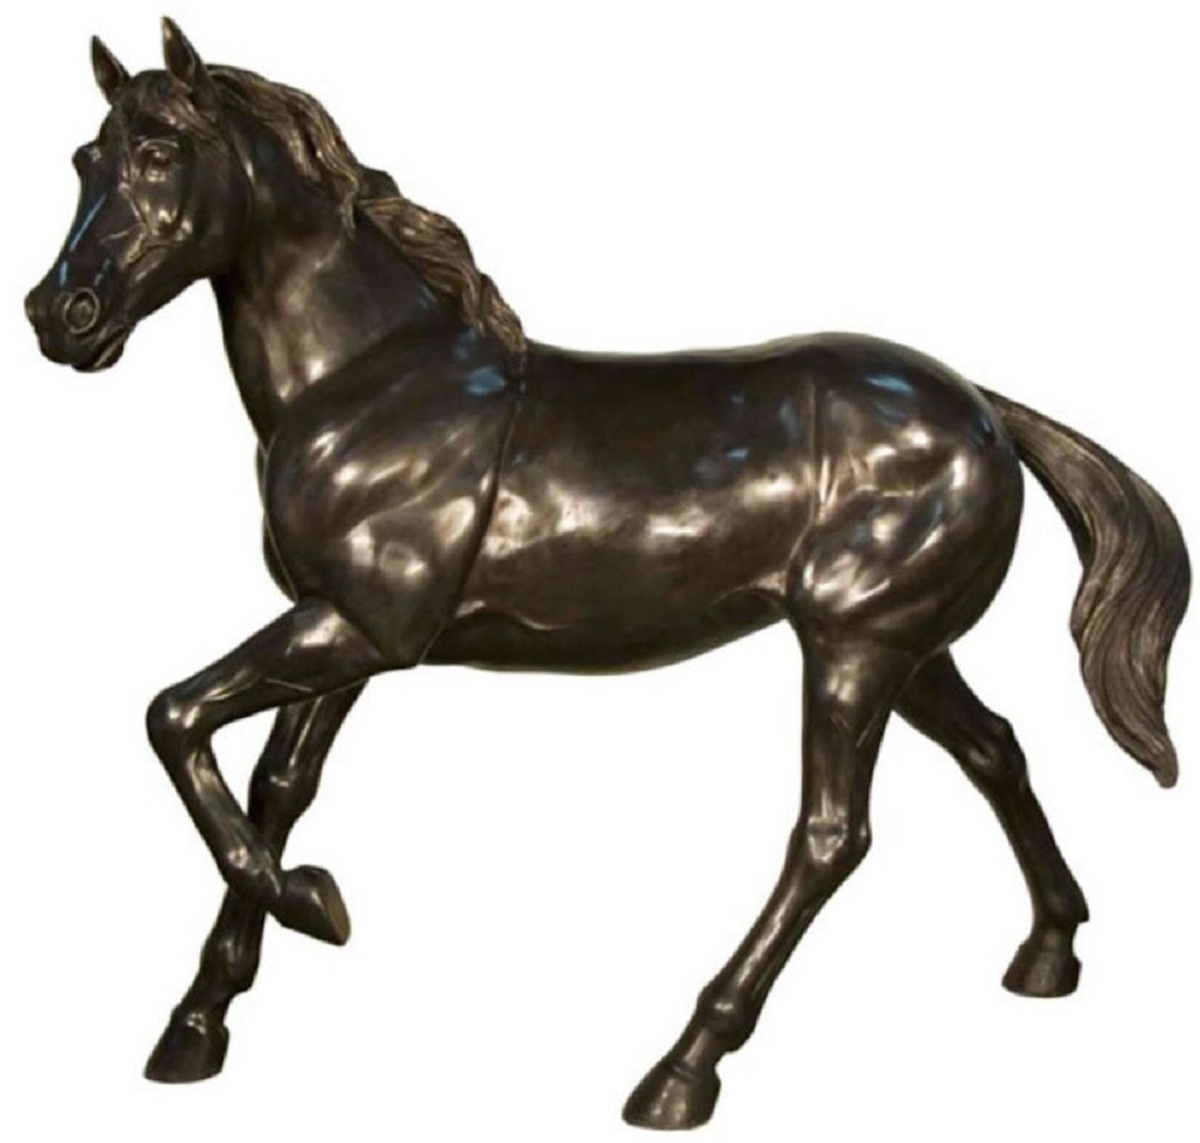 Casa Padrino Luxus Bronze Deko Skulptur Pferd 188 x 64 x H. 157 cm - Riesiege Bronze Skulptur - Lebensgroße Tierfigur - XXL Bronze Figur - XXL Garten Skulptur - Luxus Garten Deko